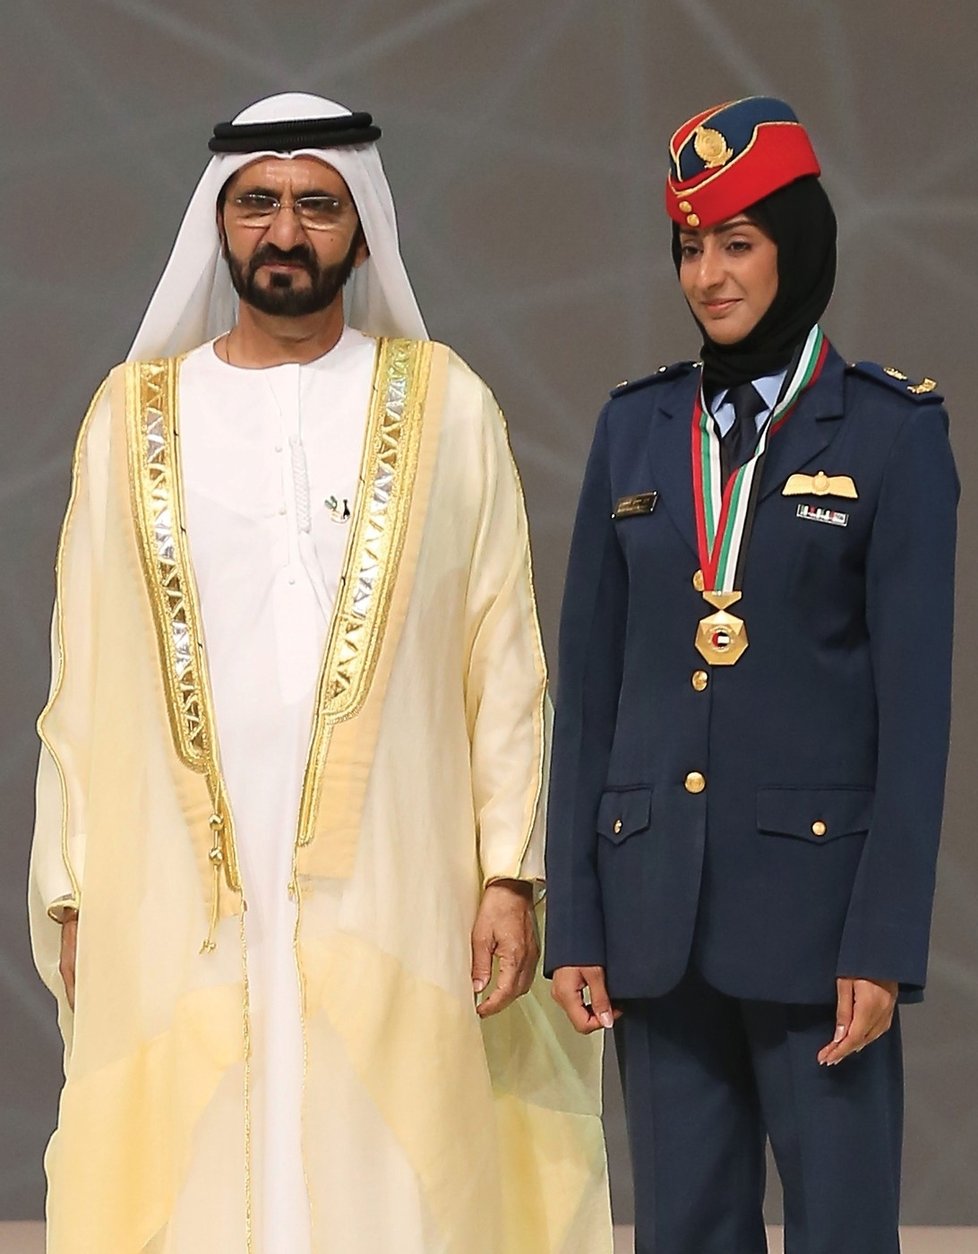 Pilotka Mariam společně s ministrem obrany Spojených arabských emirátů